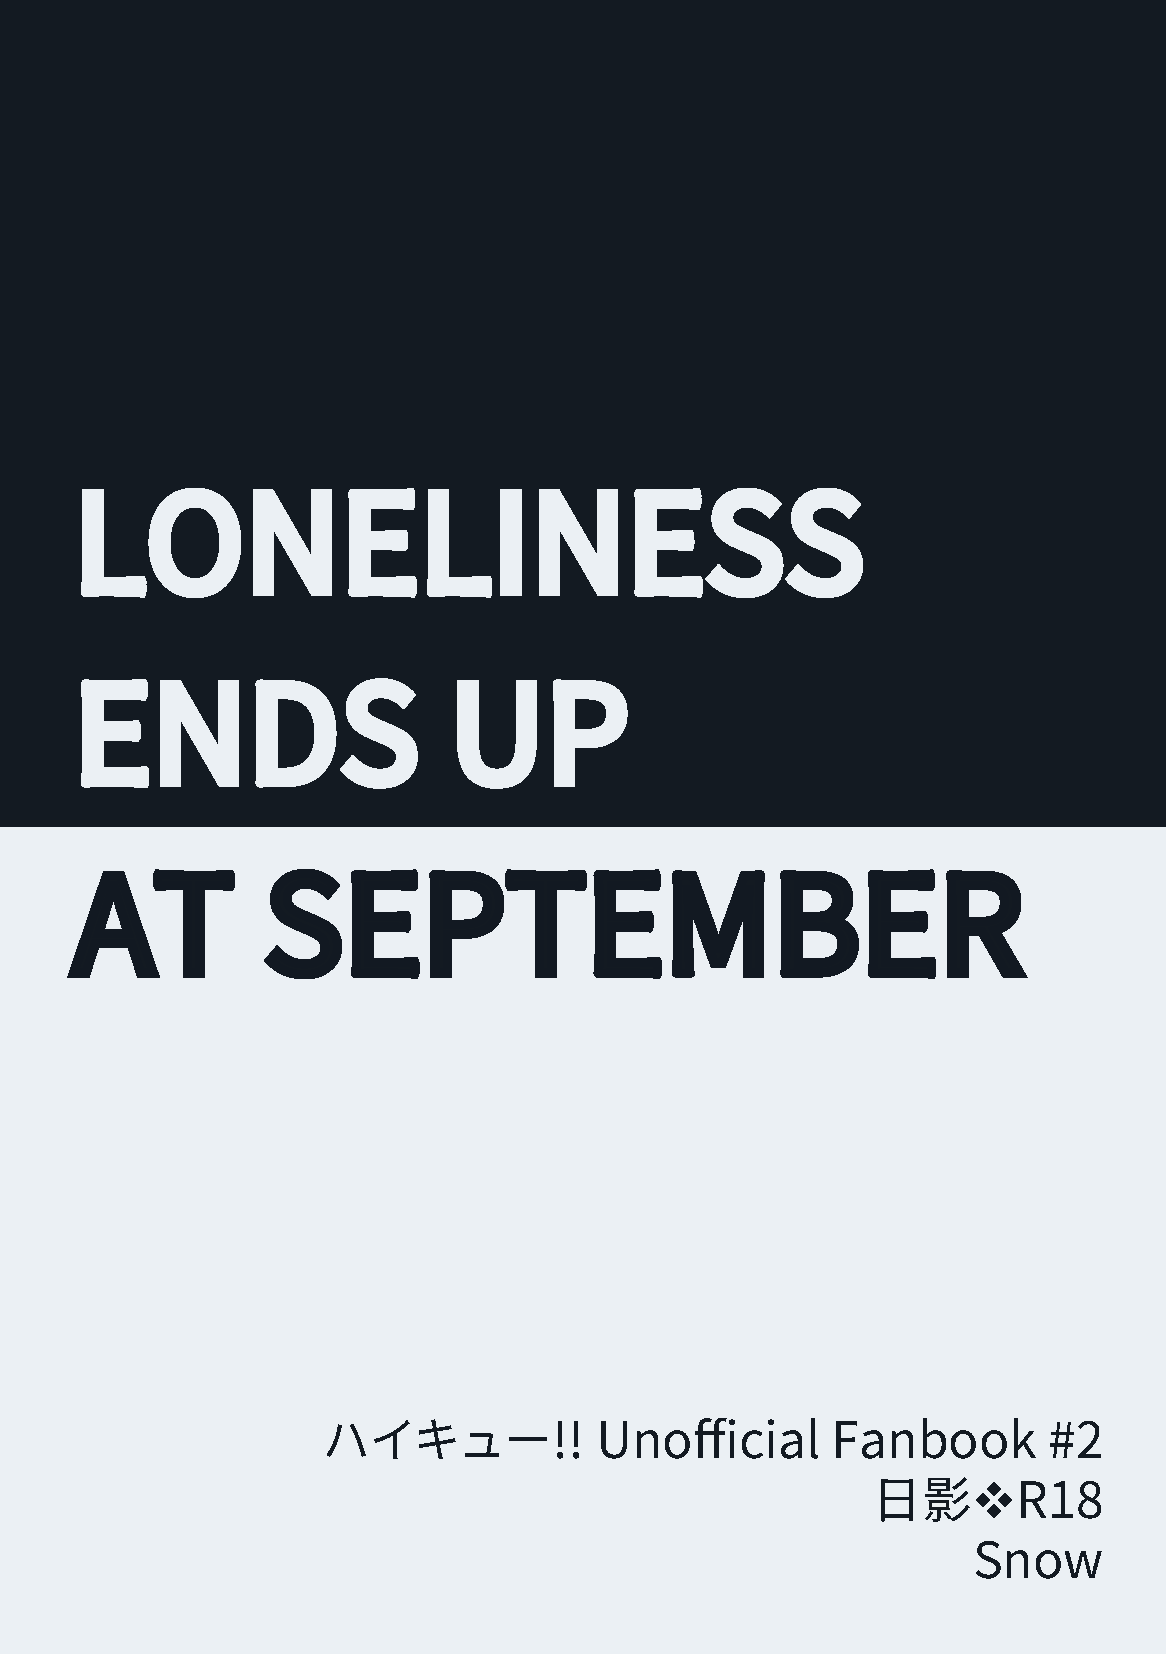 [排球少年] 日影小說本 《Loneliness ends up at September》